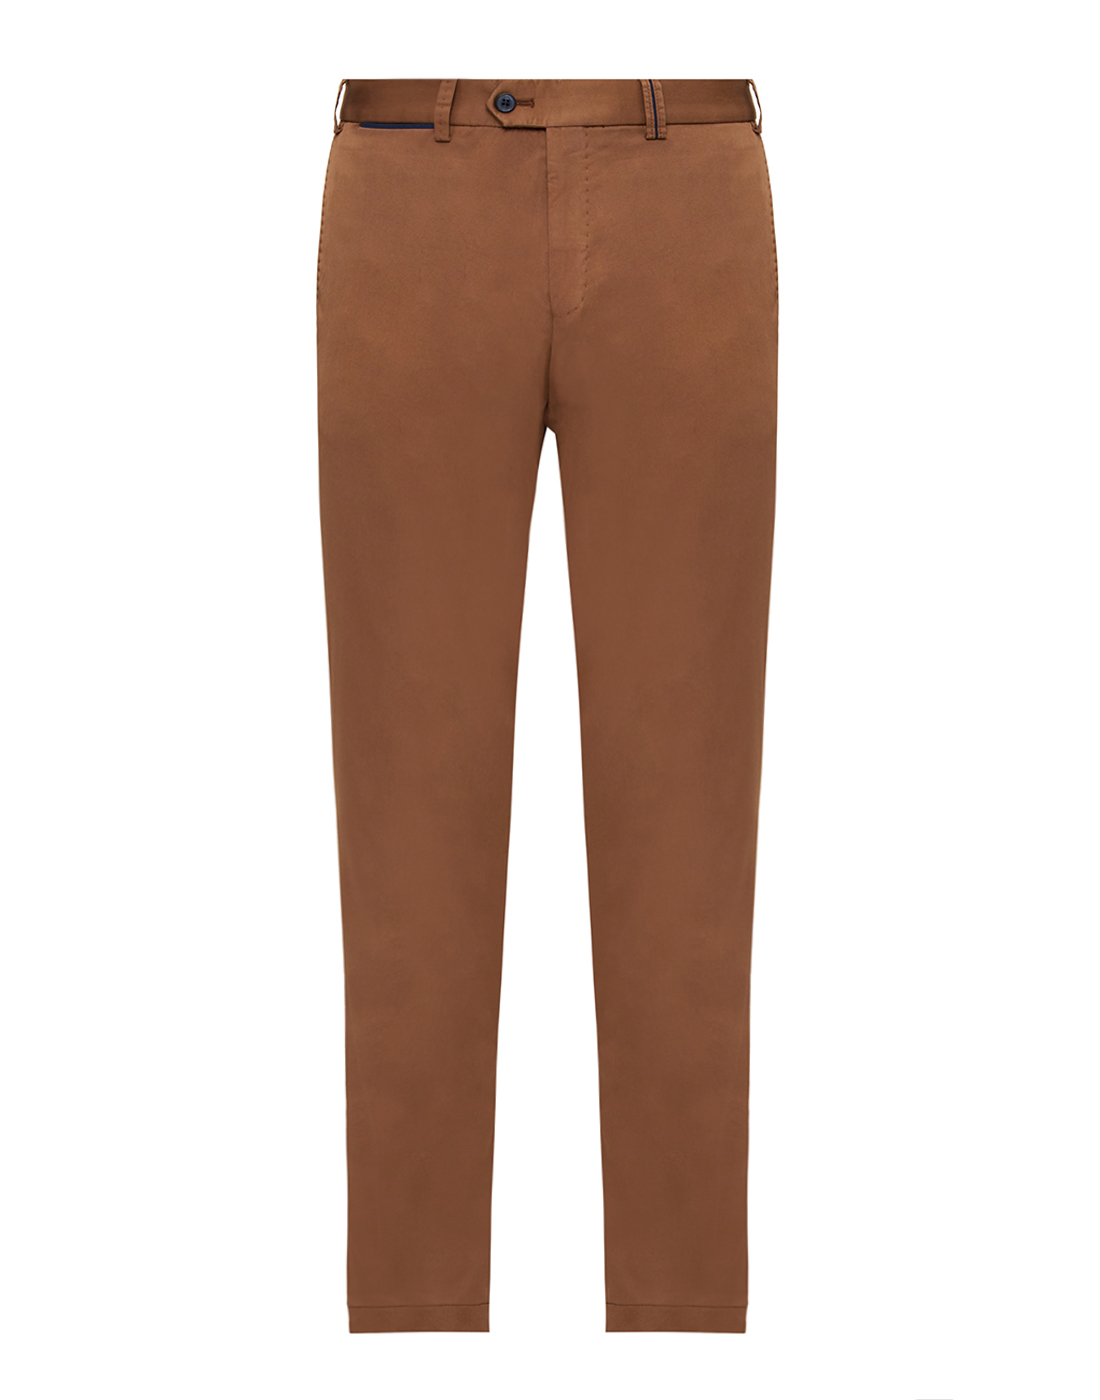 Мужские коричневые брюки Hiltl  S73295 31 53000-1